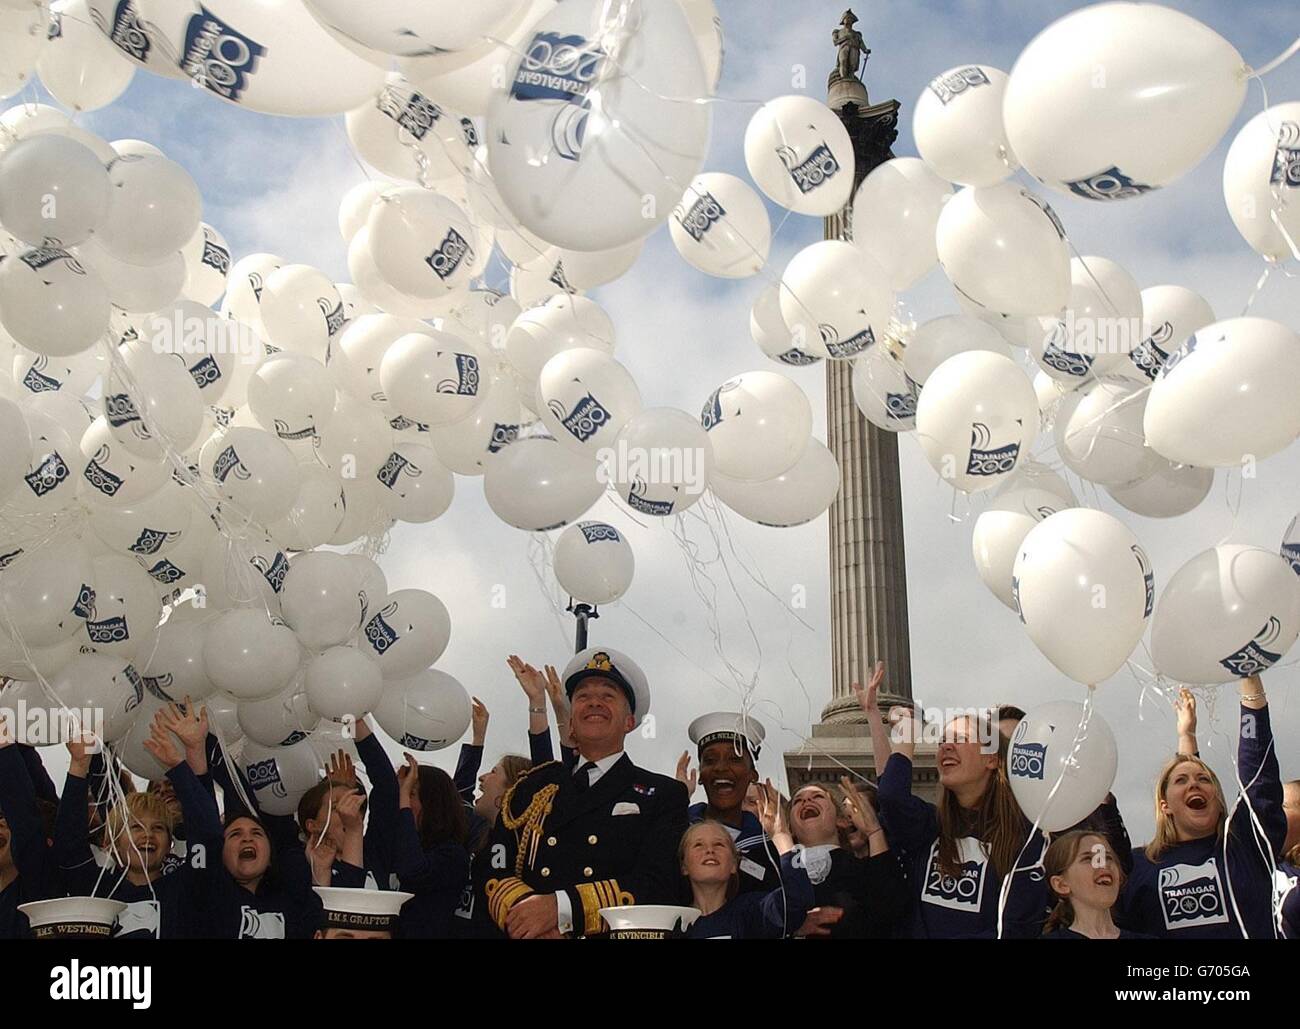 Der erste Sea Lord Admiral Sir Alan West und die Kinder von Horsham in Sussex lassen Ballons auf dem Trafalgar Square im Zentrum von London frei, um die Ankündigung der Pläne zum 200. Jahrestag der Schlacht von Trafalgar im Oktober 2005 zu würdigen. Stockfoto